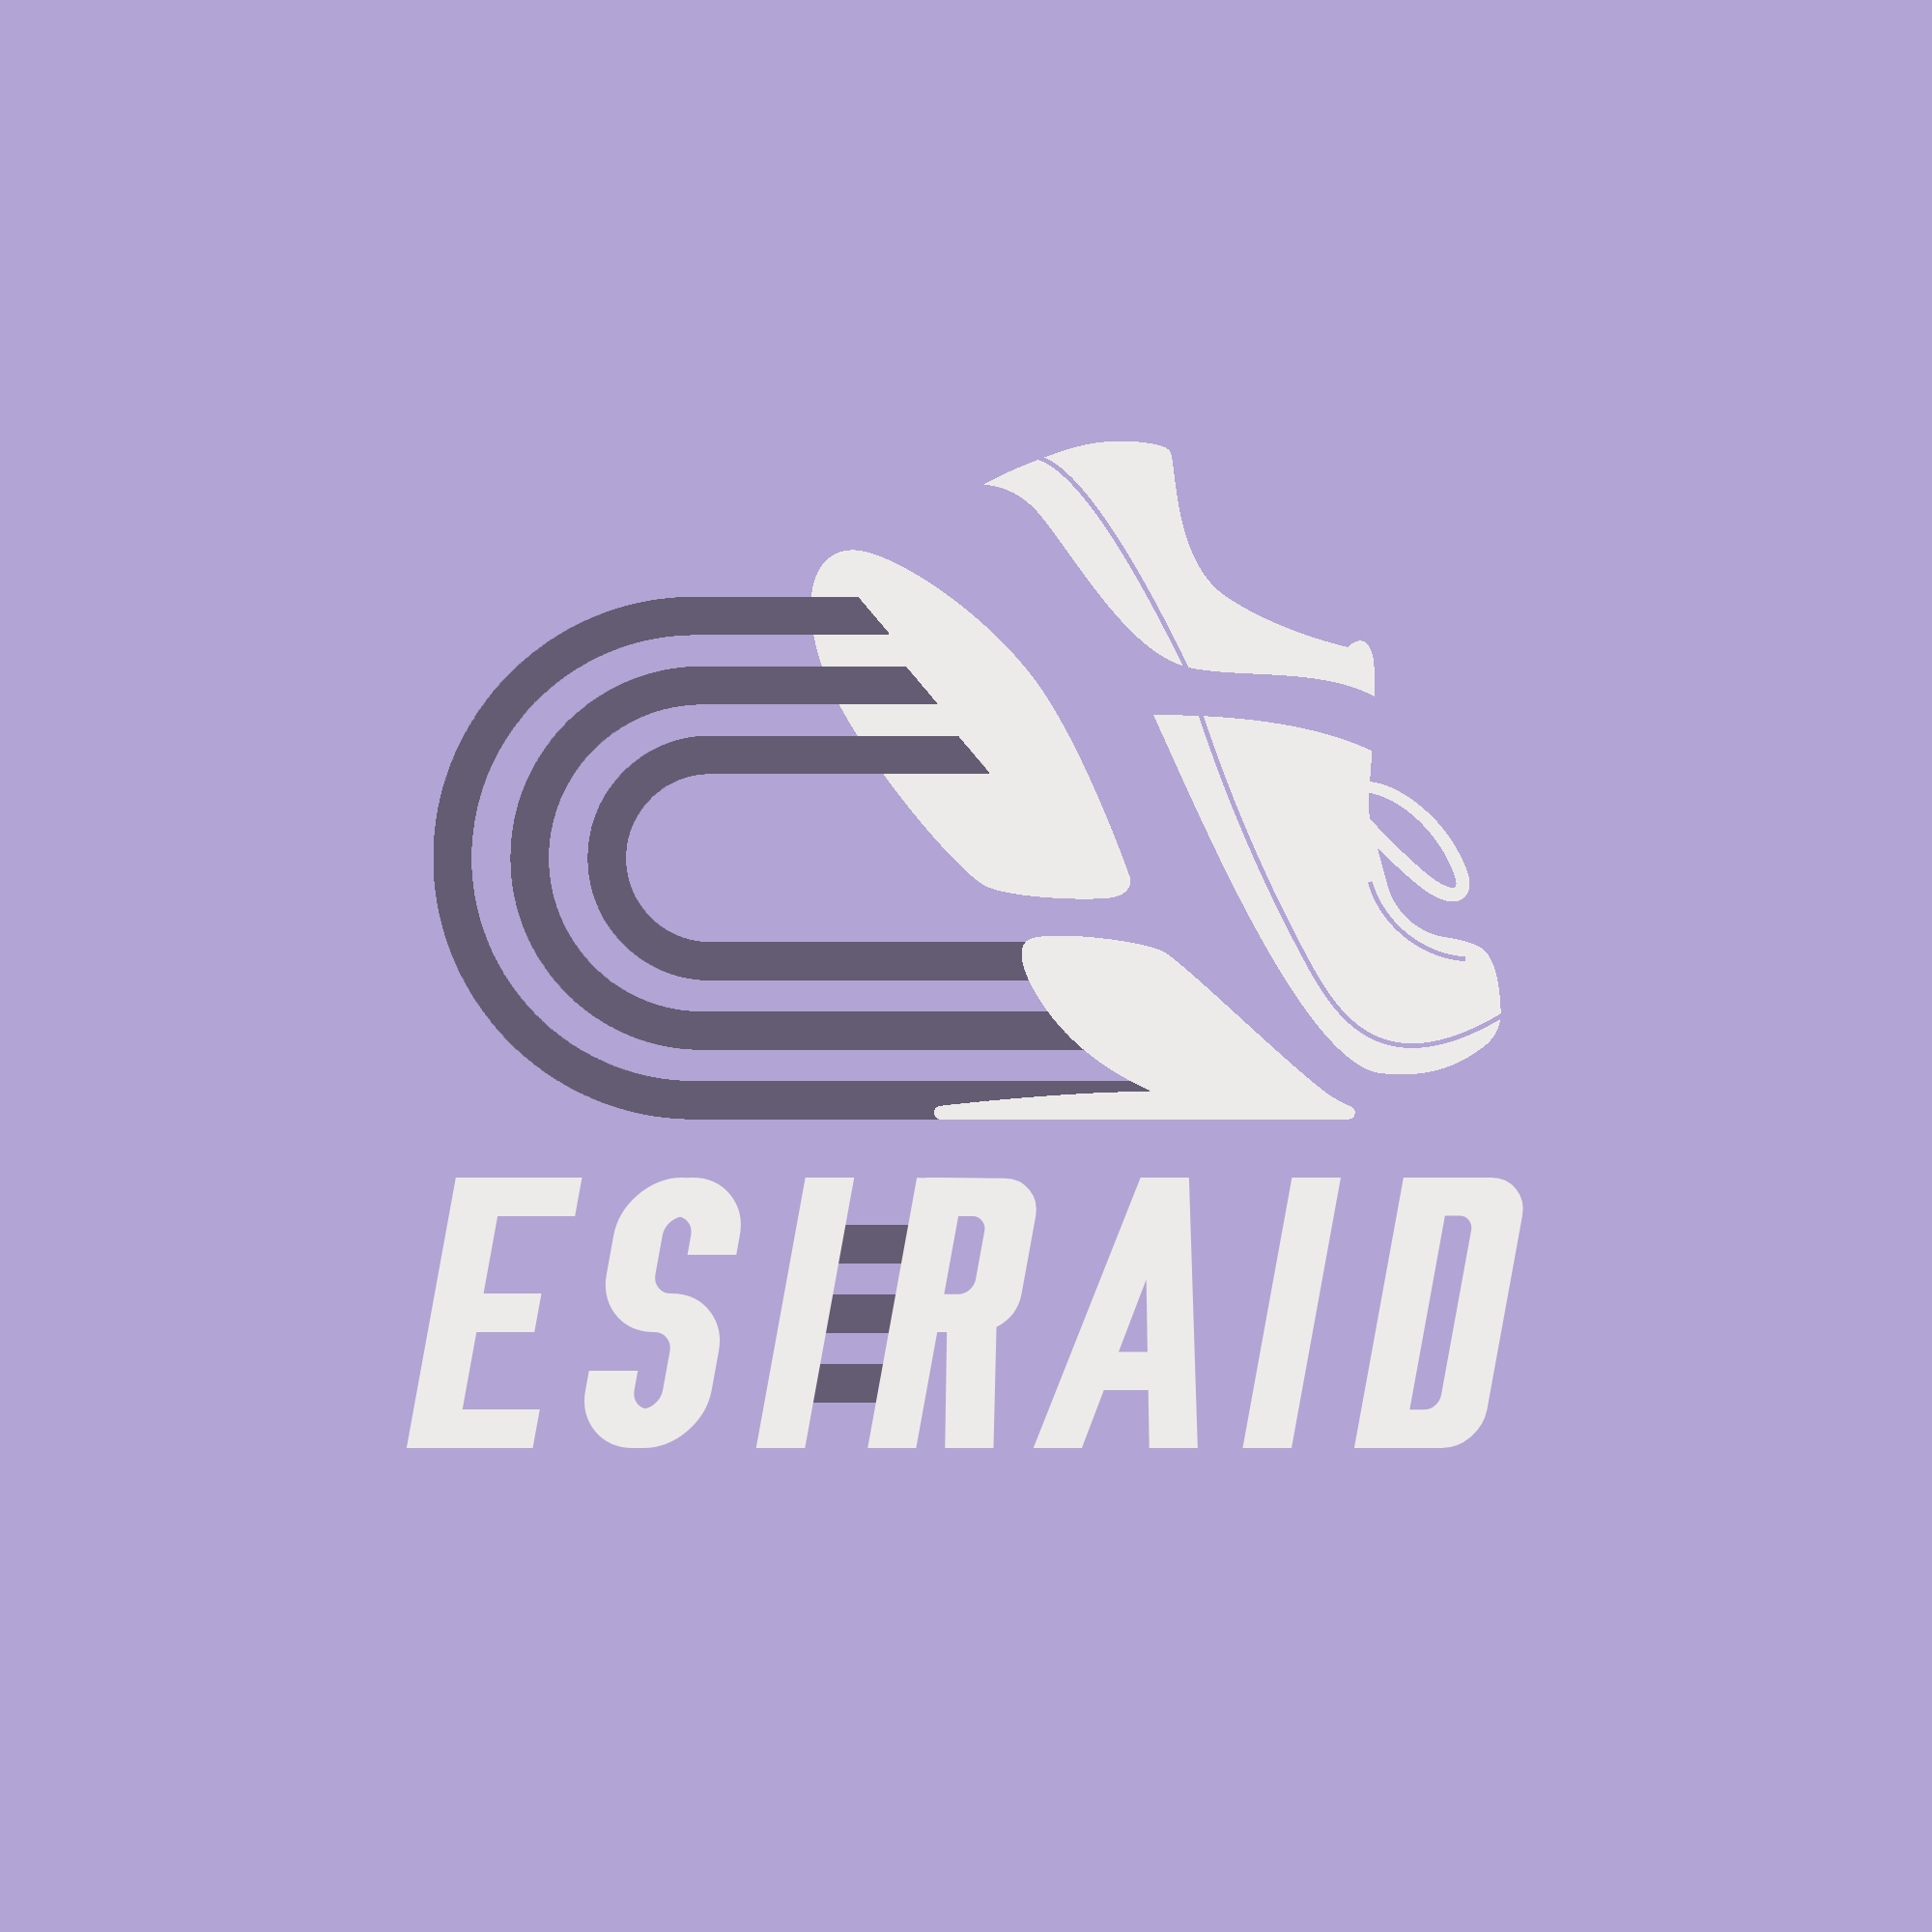 ESIRAID